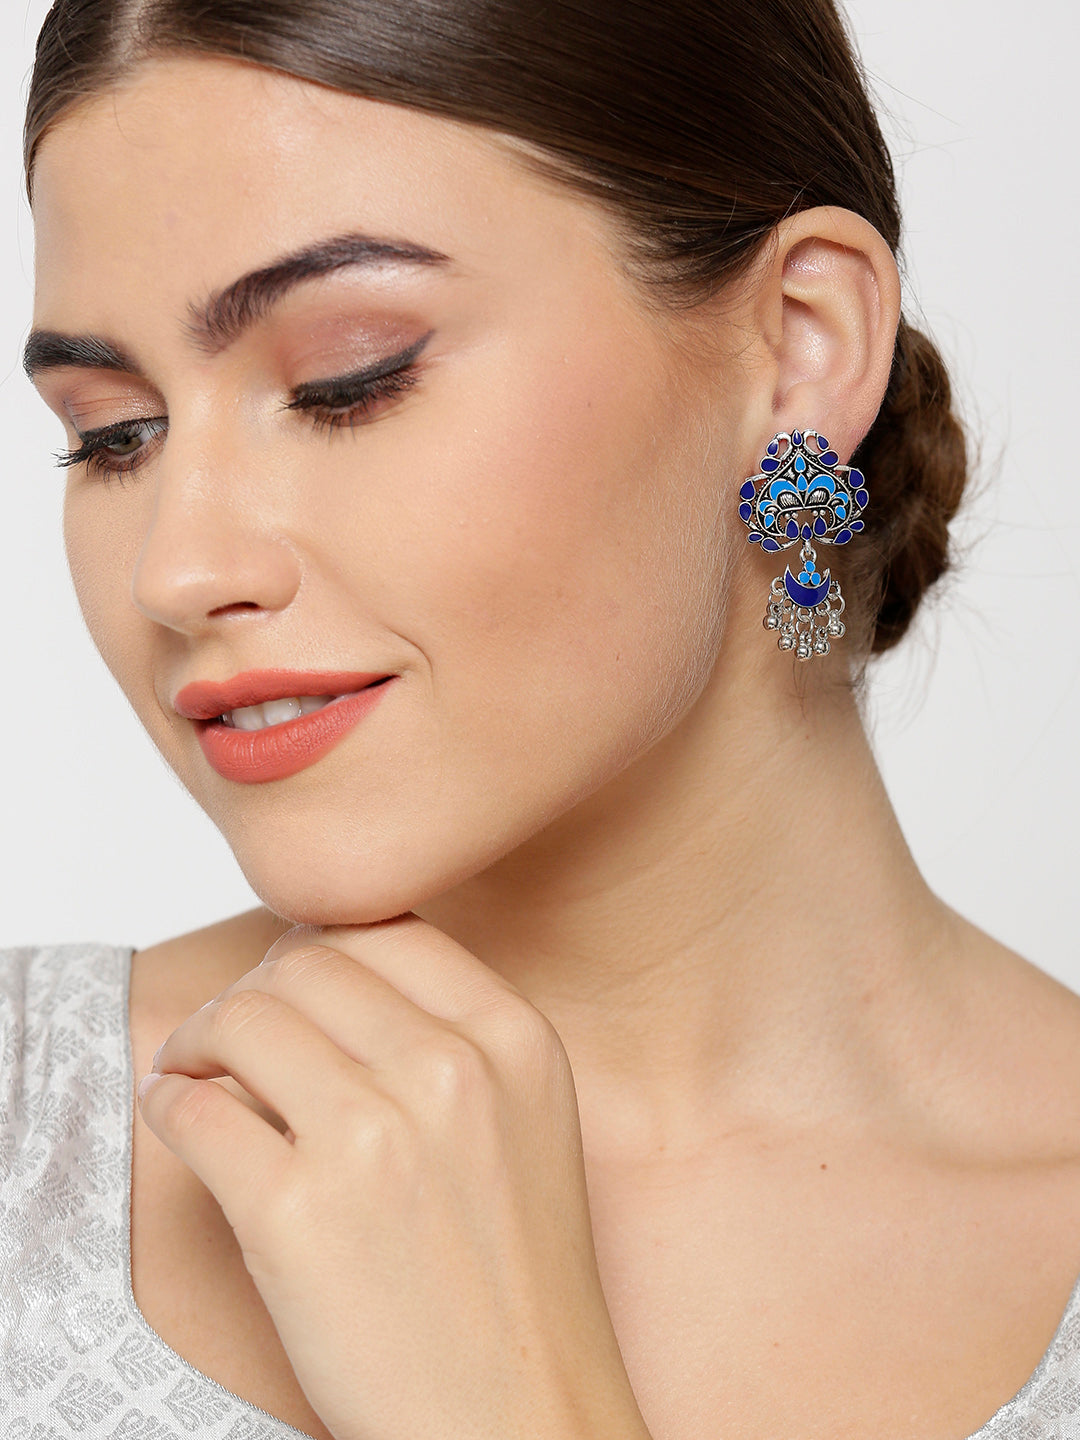 Oxidised Silver-Plated Peacock Inspired Meenakari Drop Earrings In Blue color